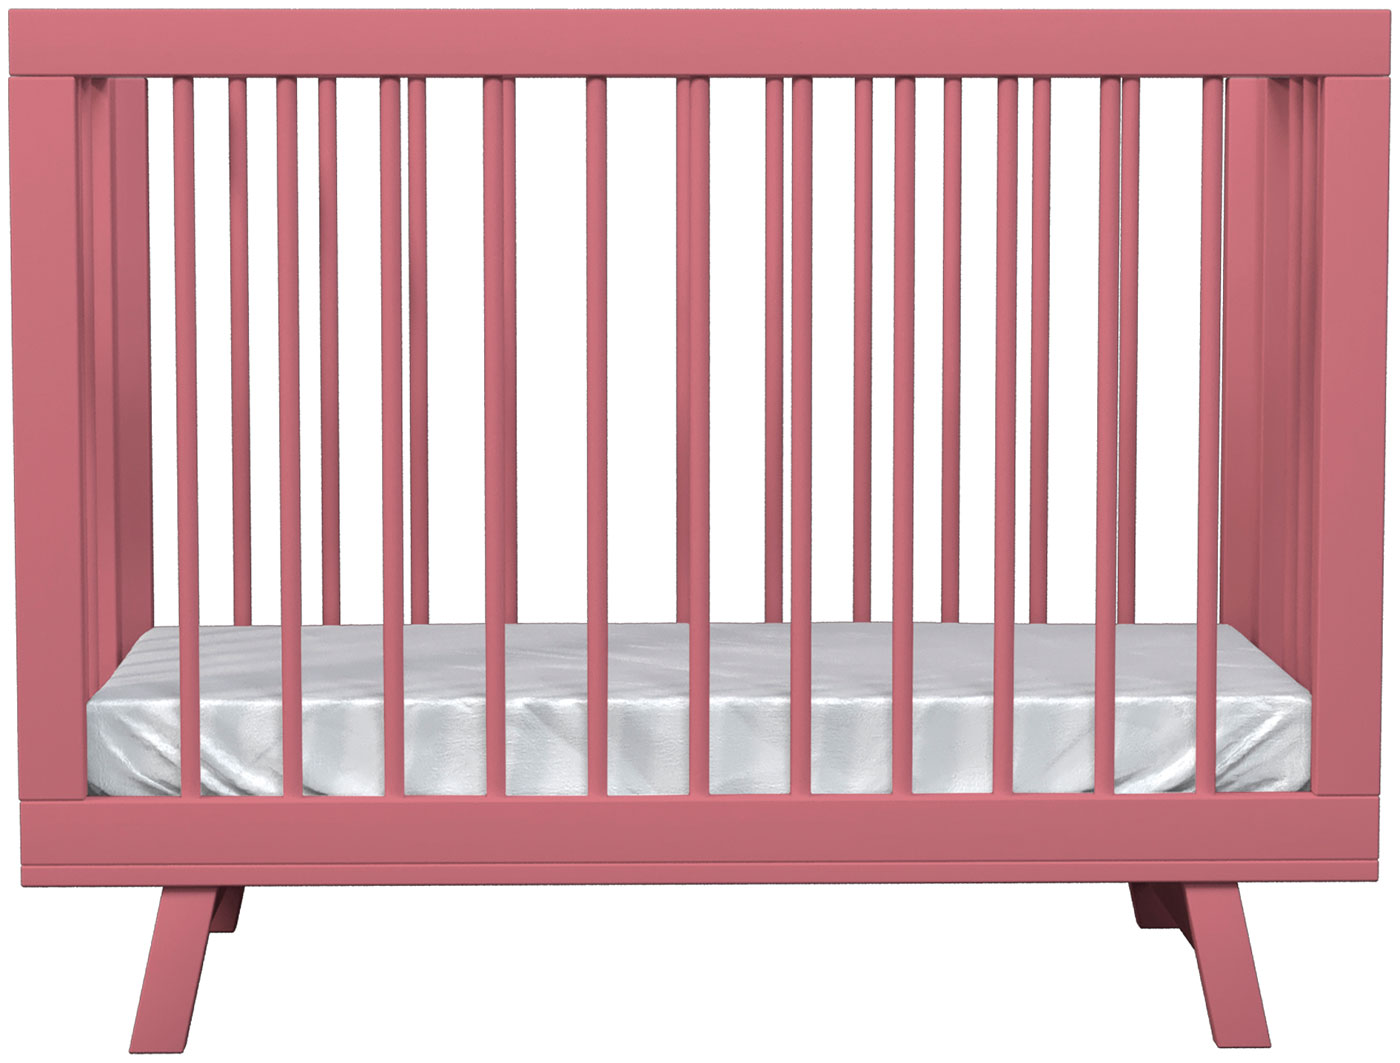 Кроватка для новорожденного Lilla Aria Antique Pink